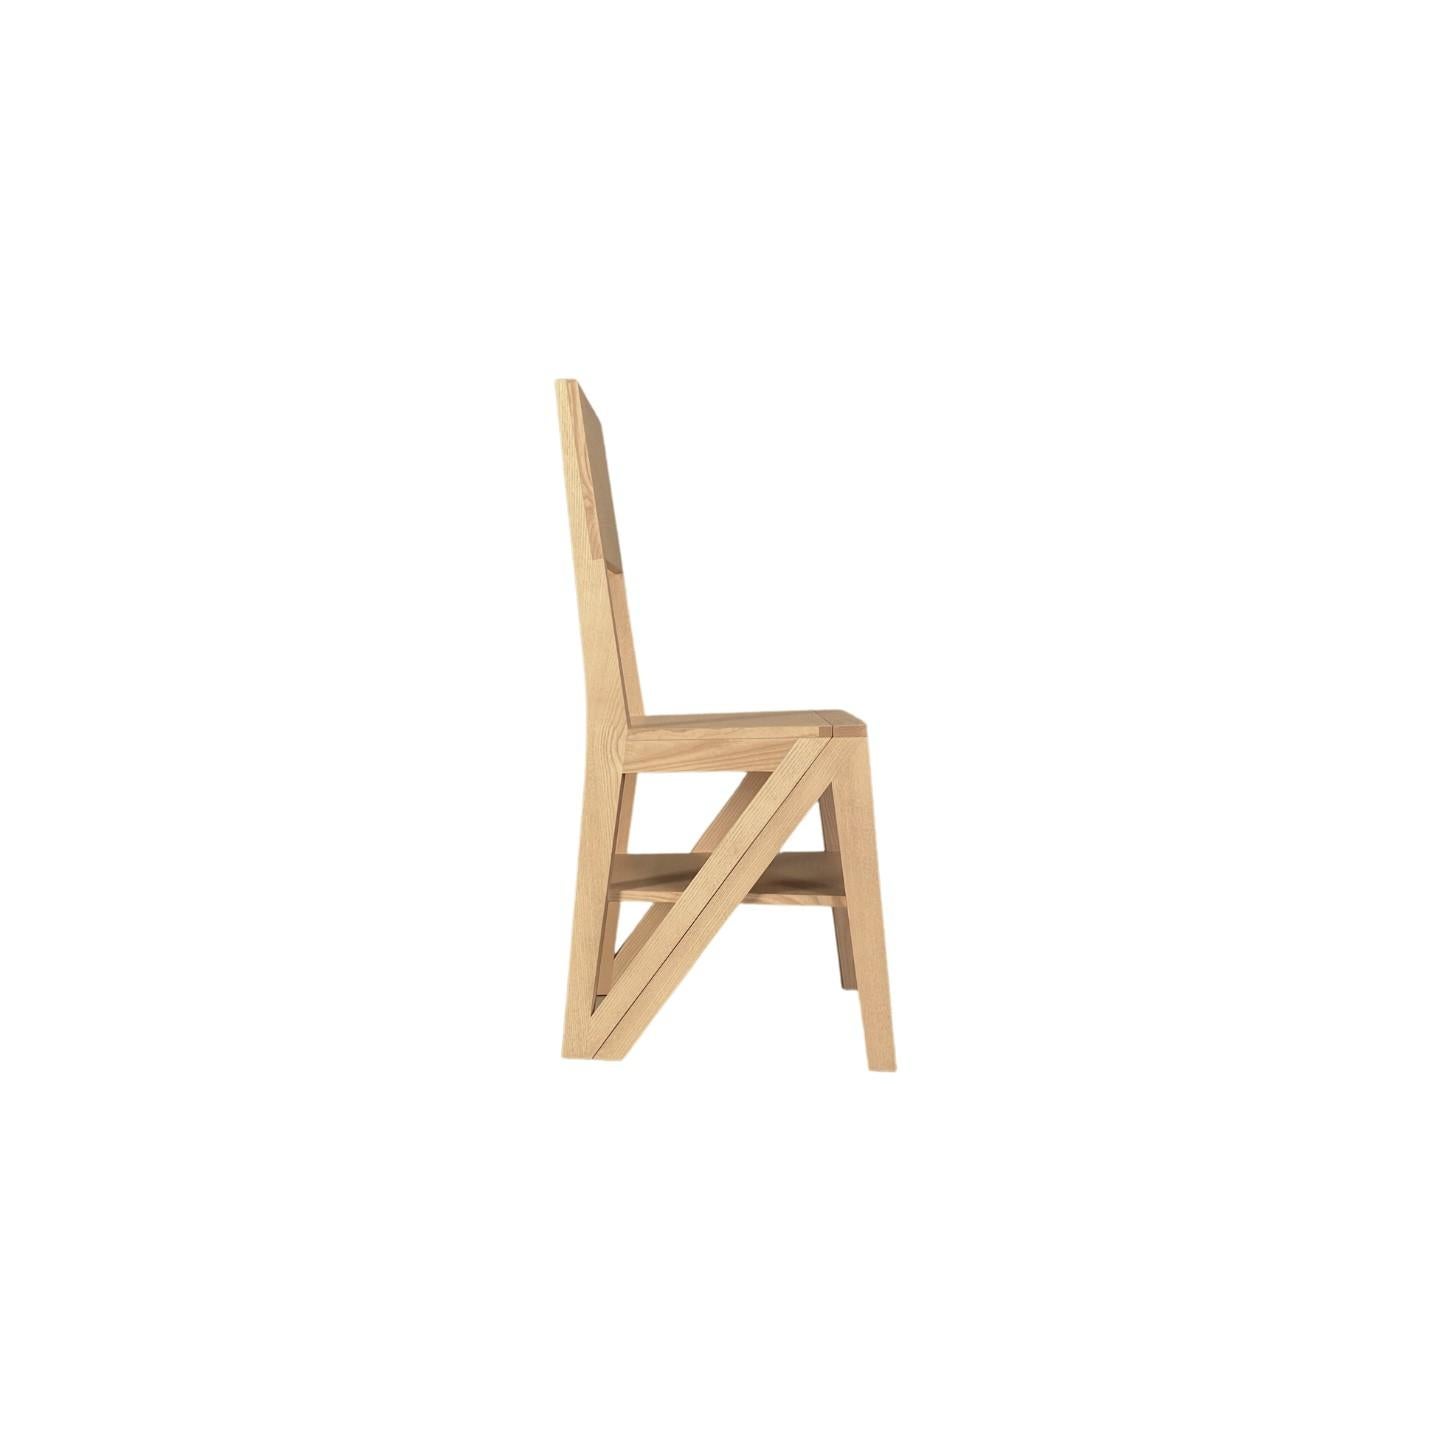 La Scala est une chaise originale en bois de frêne. Grâce à son cadre solide, la Scala se transforme facilement en un escabeau pratique. Les lignes simples et épurées vous permettent d'utiliser le Scala dans n'importe quel espace de la maison, non